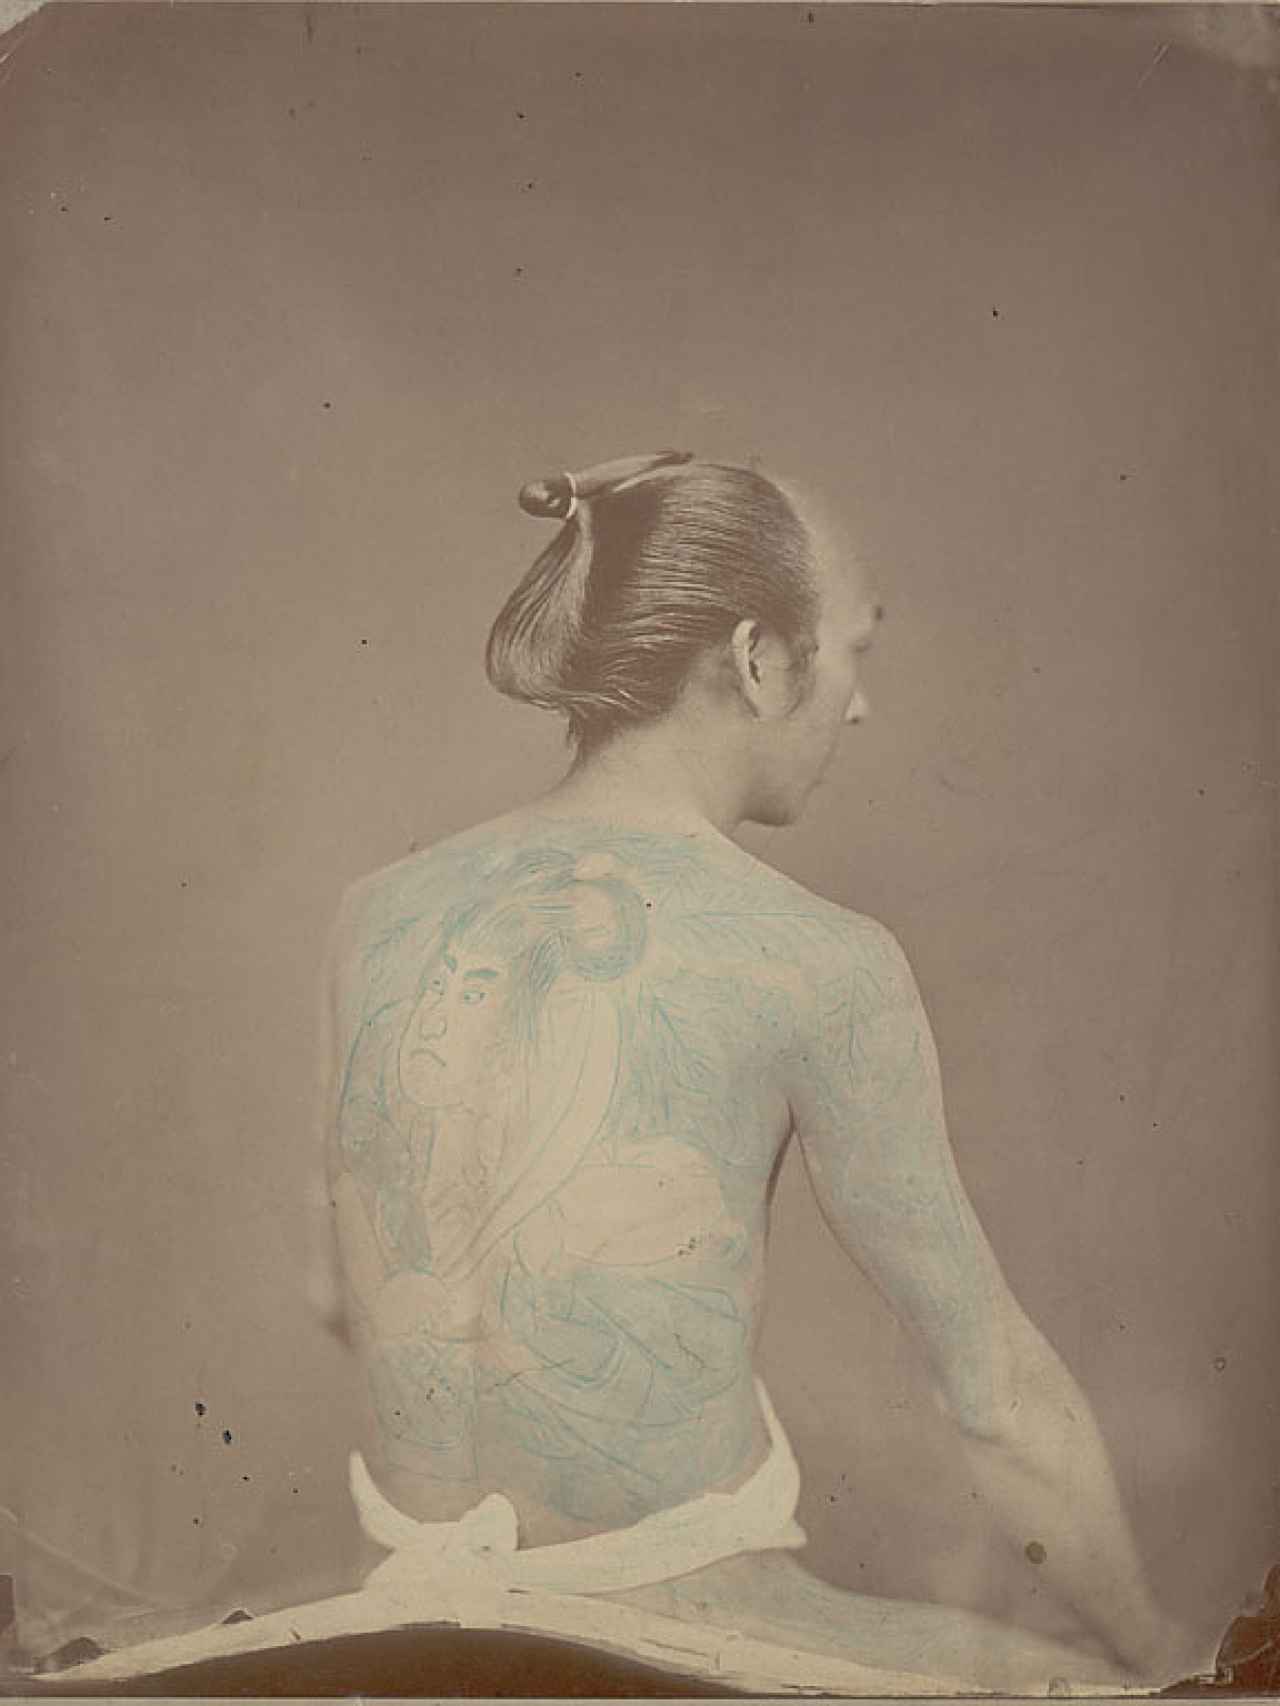 Retrato de betto (novio) tatuado, sin fecha.